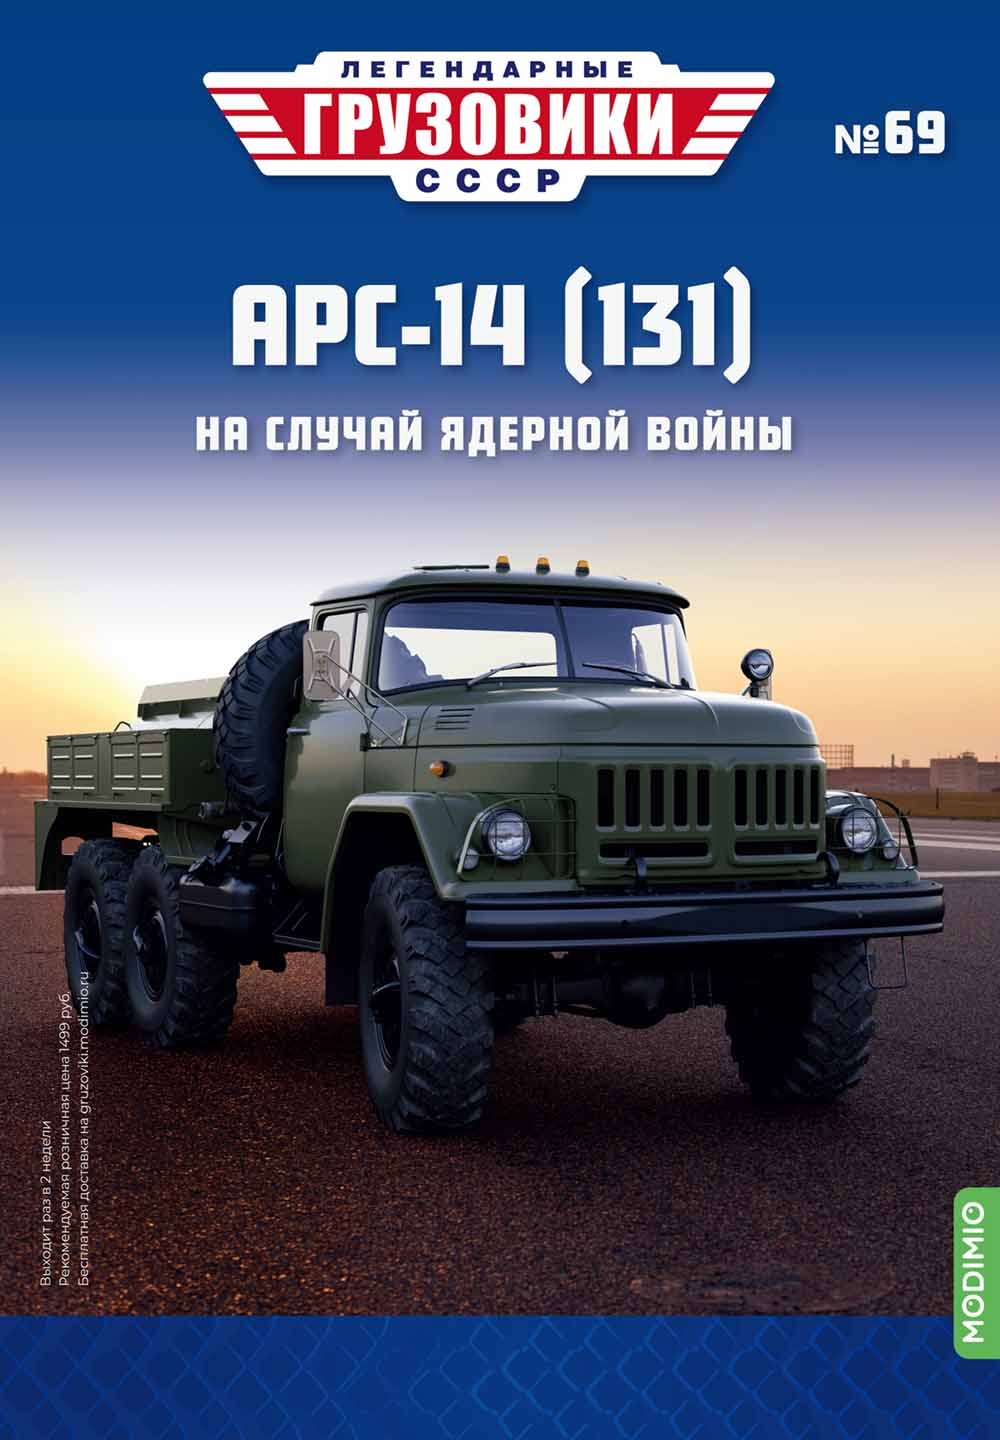 Легендарные грузовики СССР №69, АРС-14 (131)